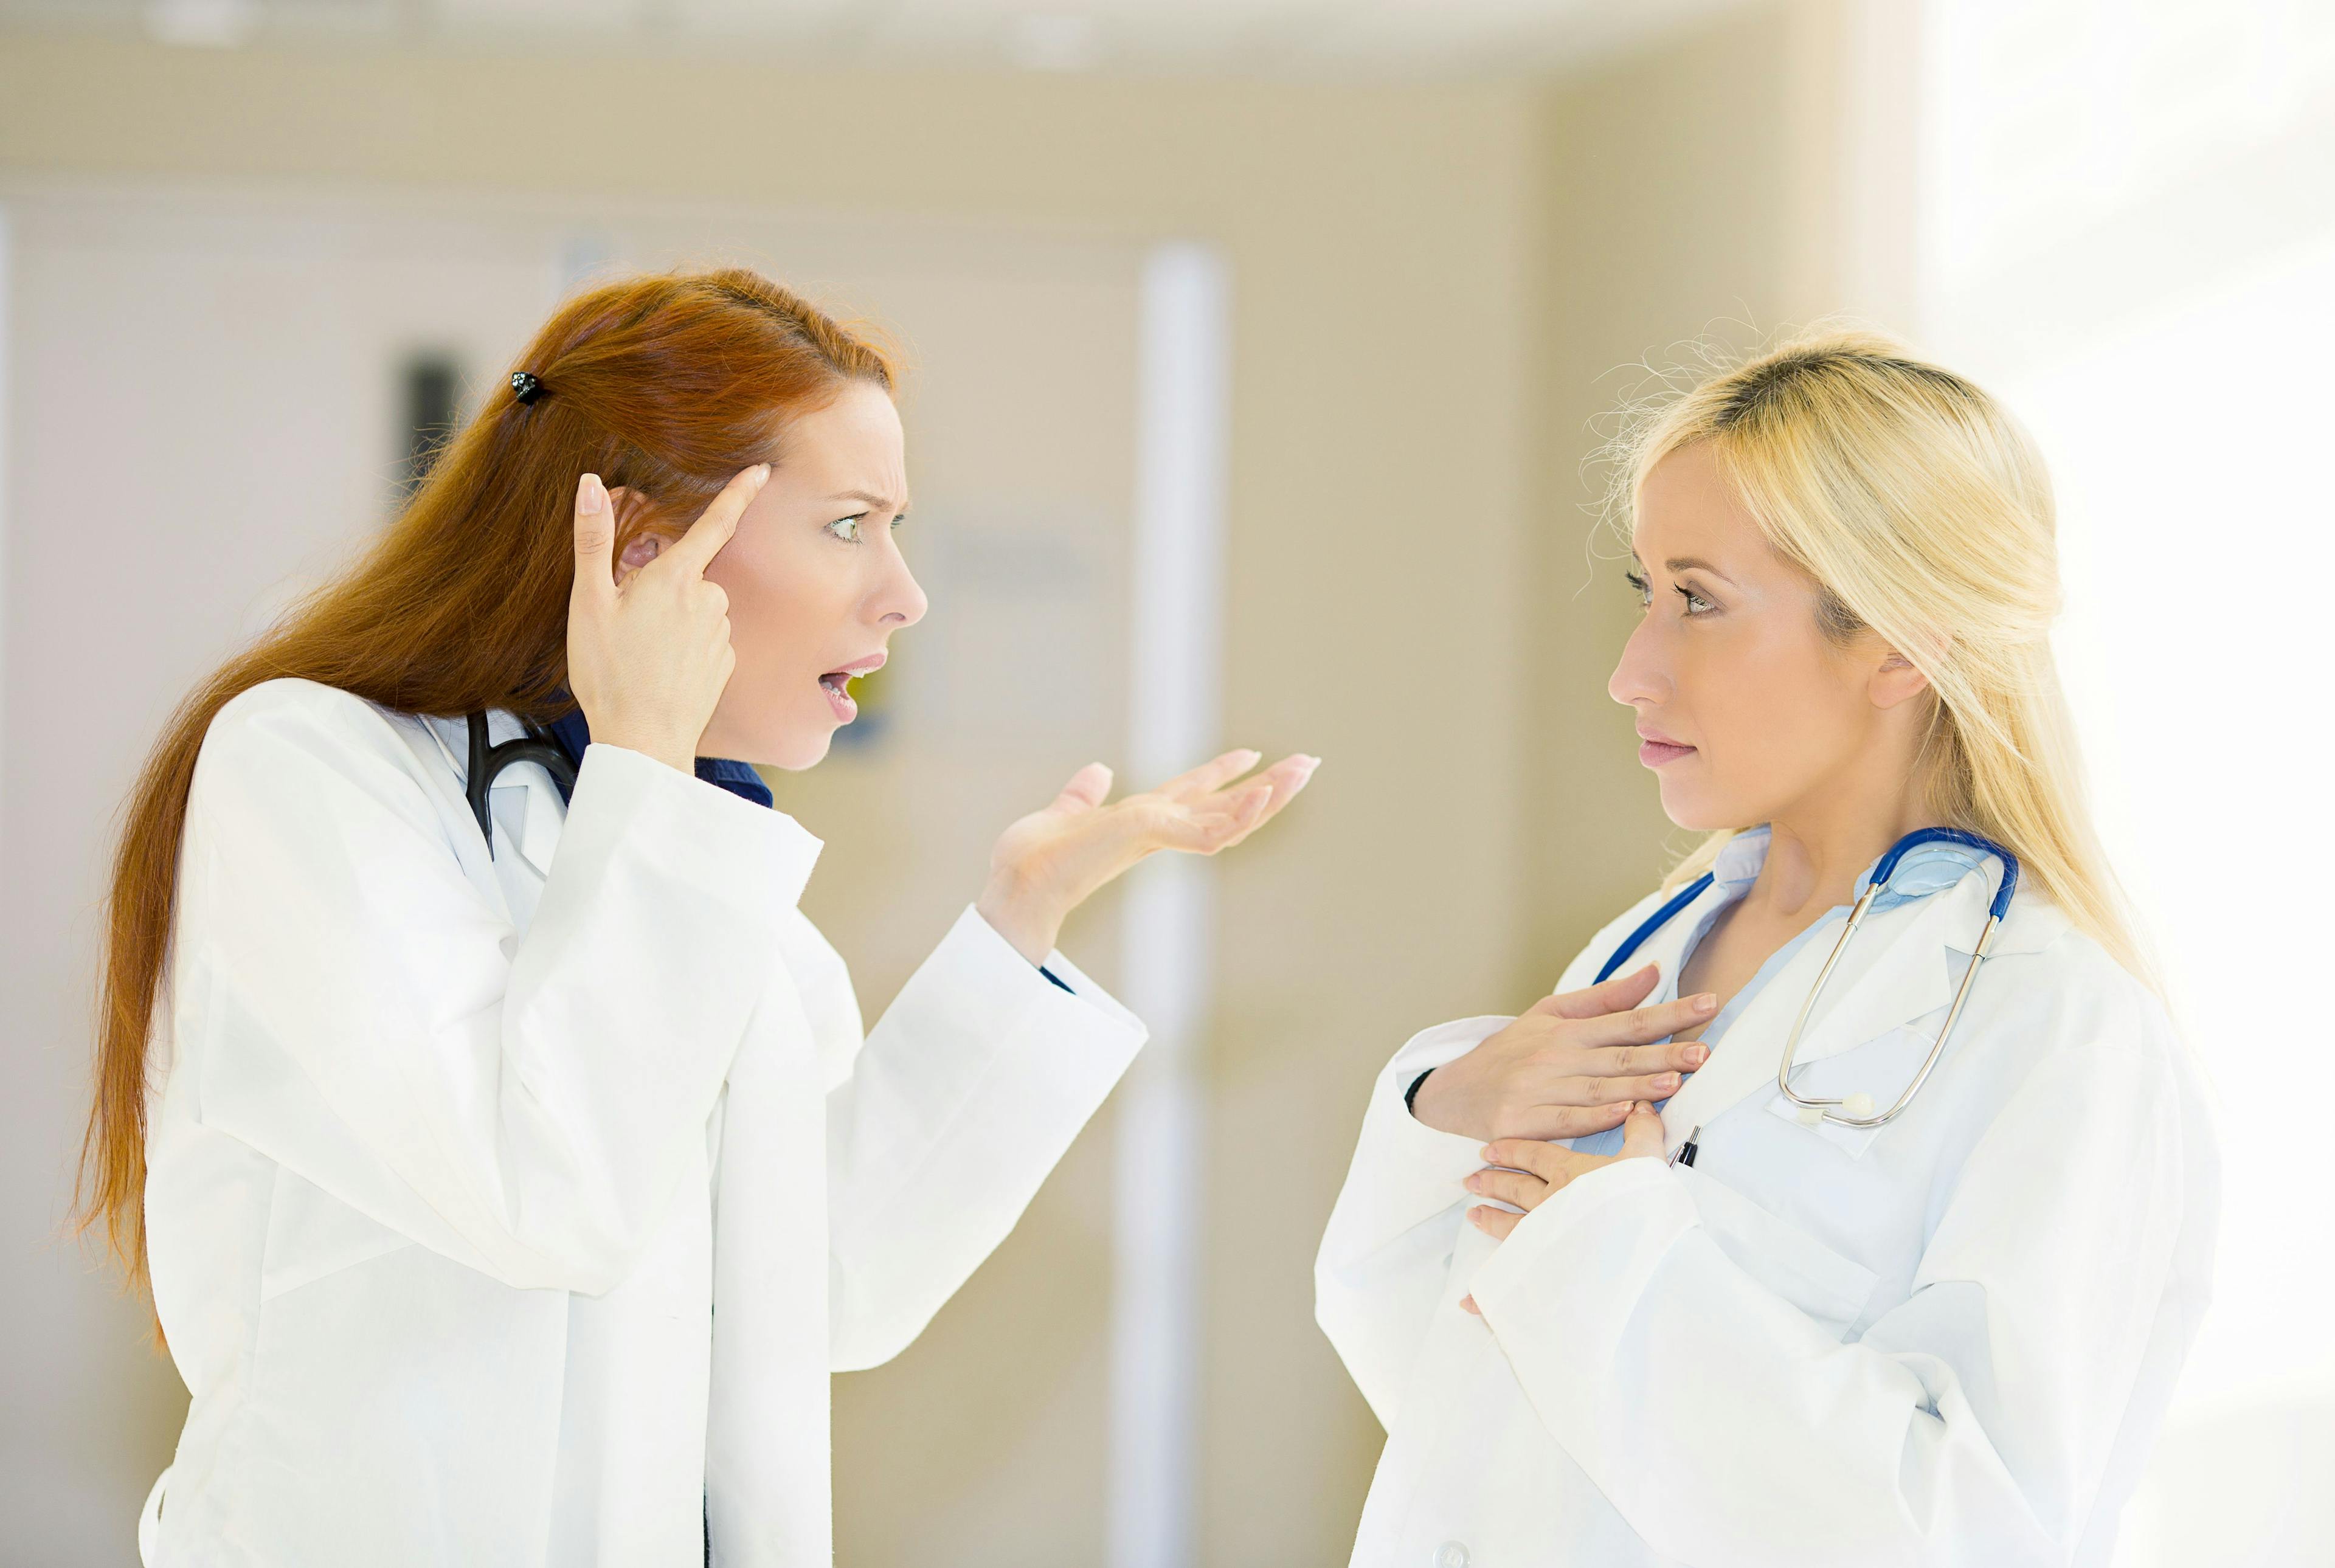 healthcare professionals arguing